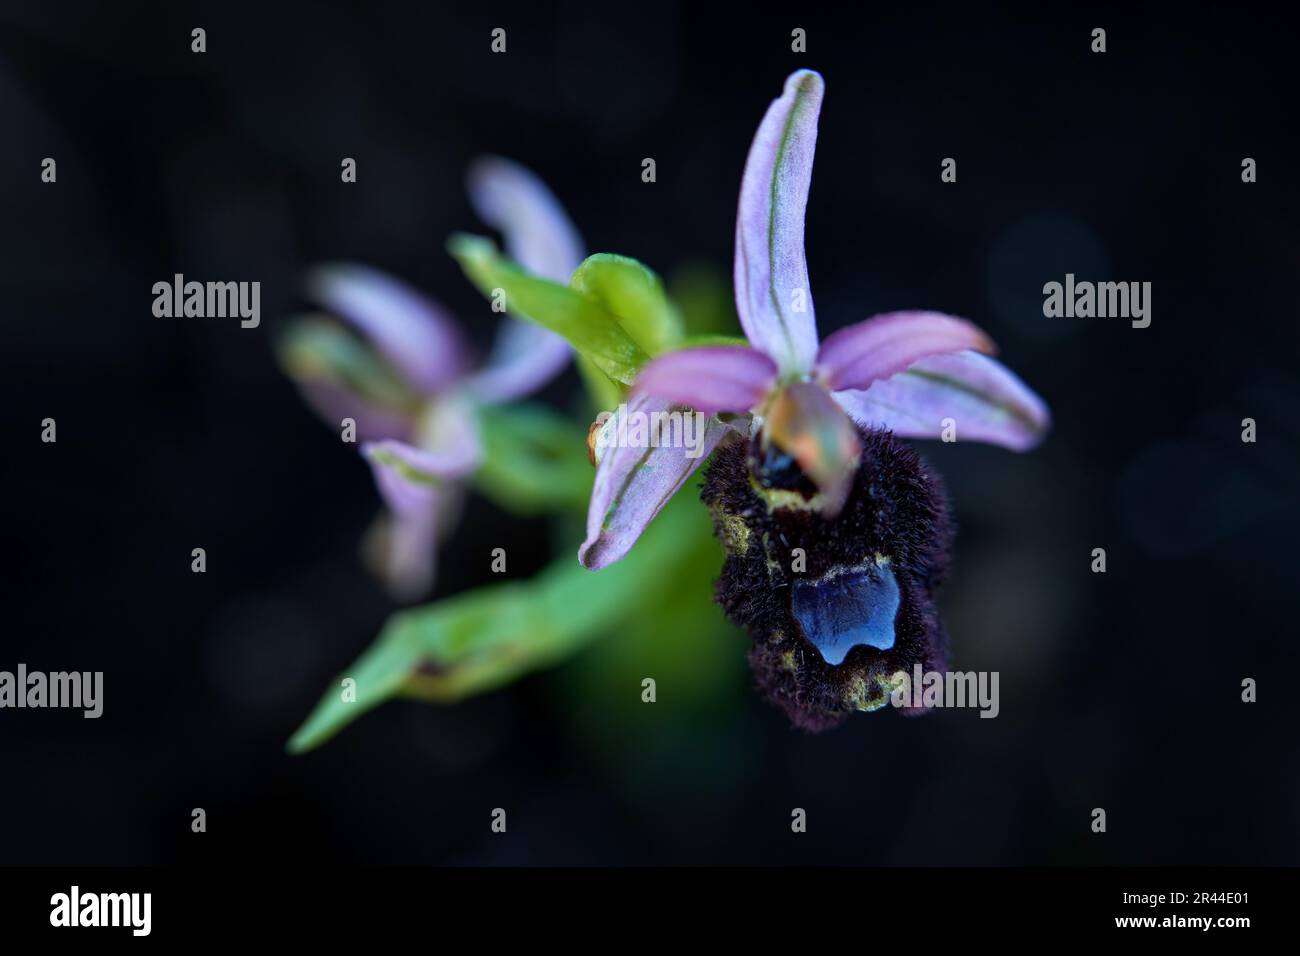 Ophrys bertolonii, Gargano in Italia. Fioritura orchidea selvatica terrestre europea, habitat naturale. Splendido dettaglio di fioritura, scena primaverile dall'Europa. Foto Stock